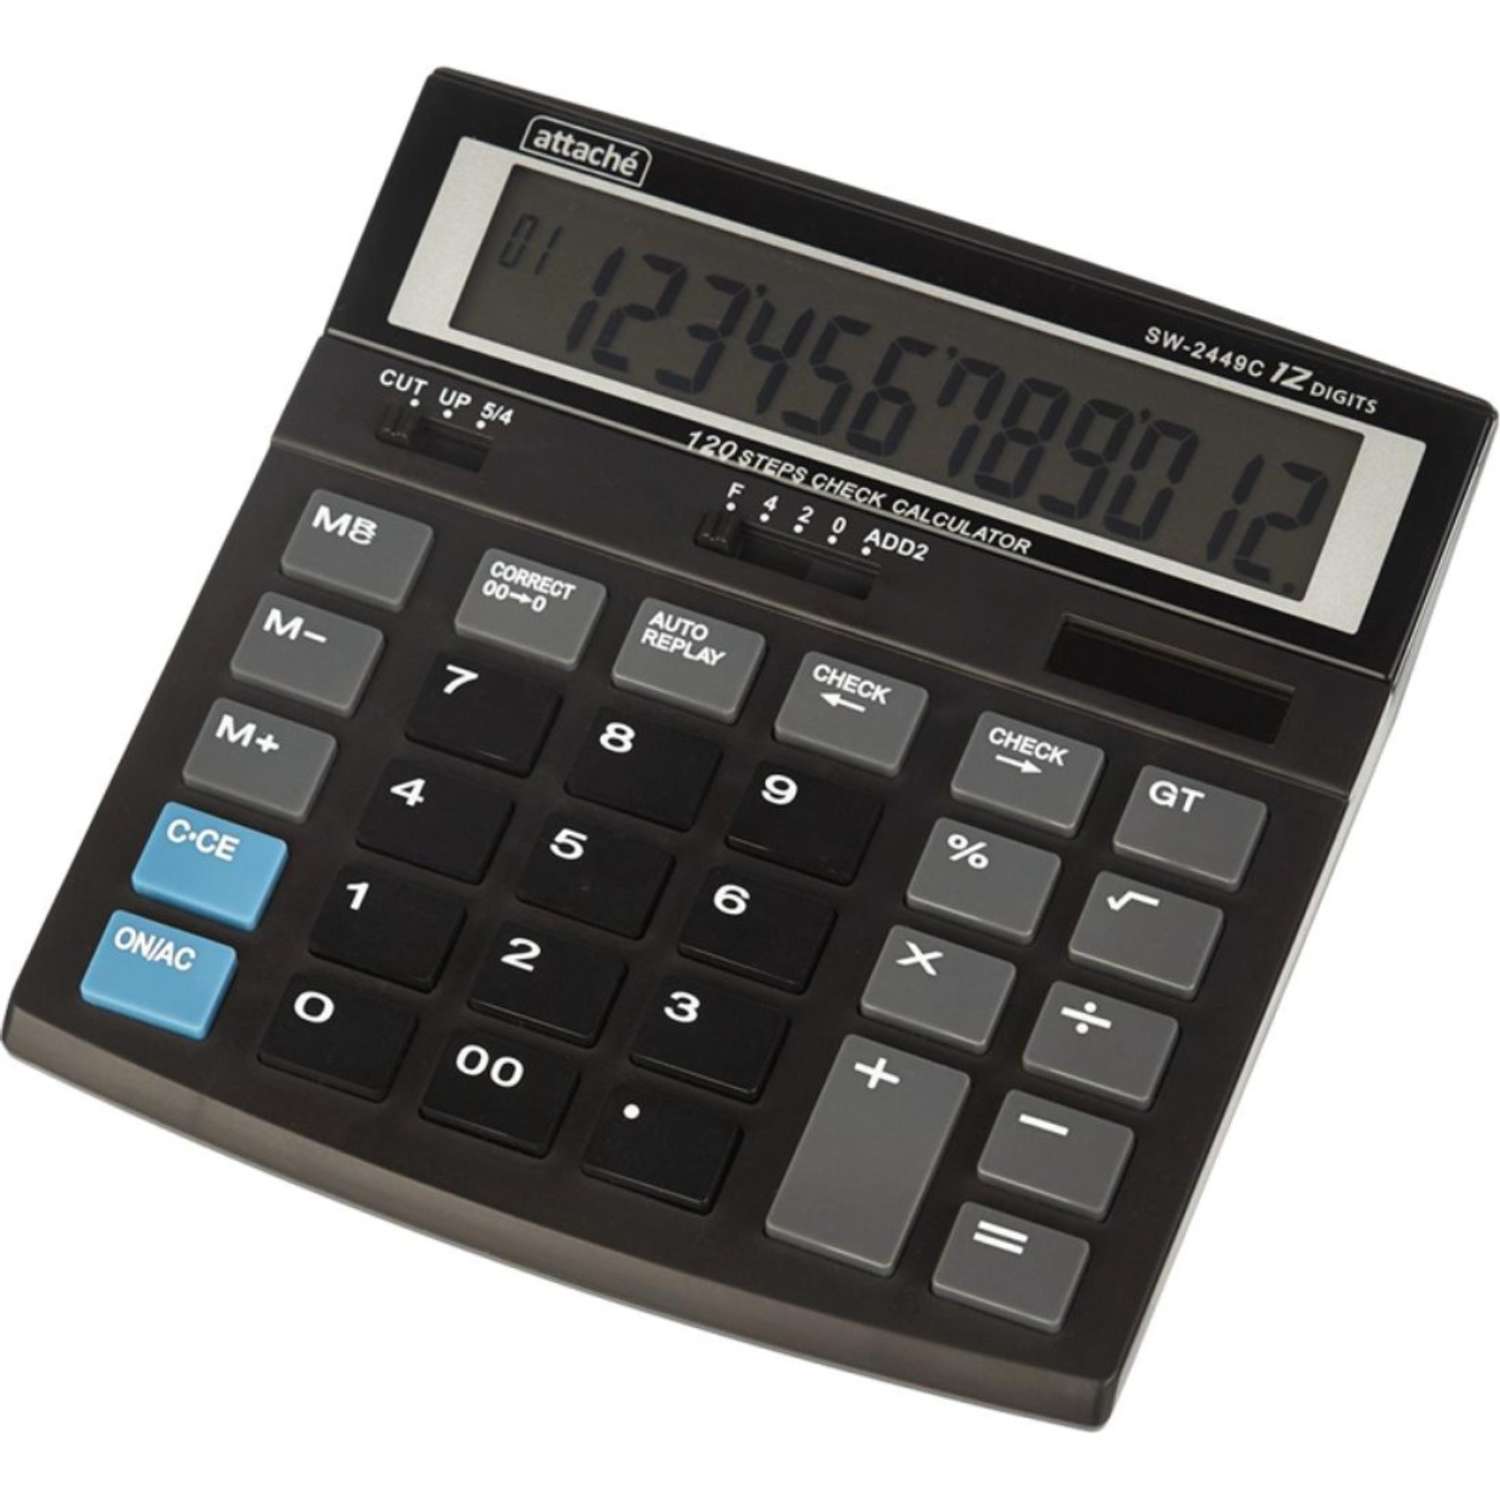 Калькулятор Attache настольный компактный 12 разрядный 120 шагов 1 шт - фото 2